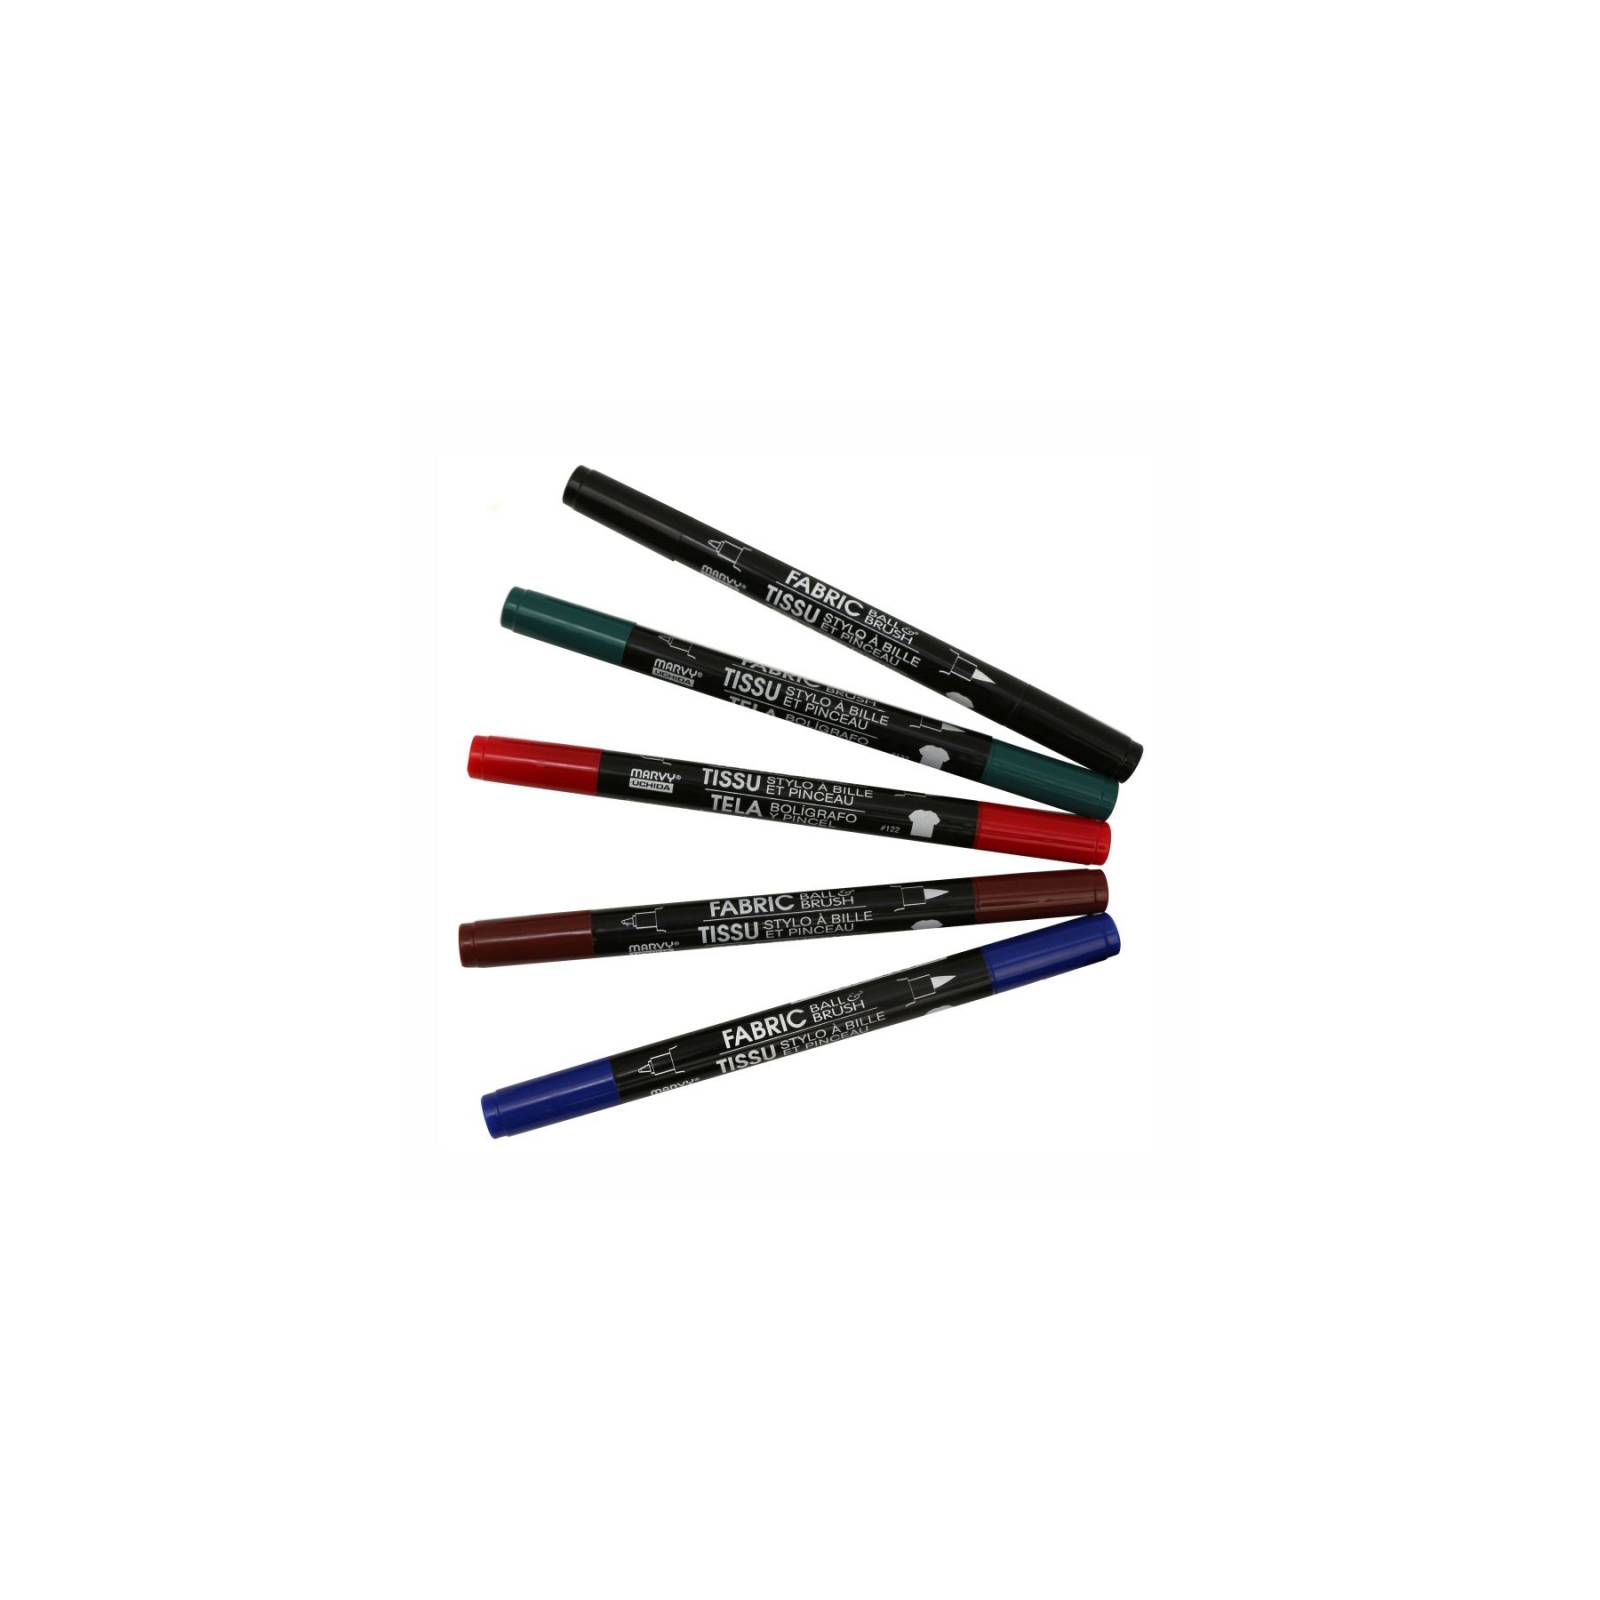 Художественный маркер Marvy Черный, д/св. тканей, двусторонний, 0,75мм, 1-2мм, 122-S, Fabric ball&Brush (028617122212)